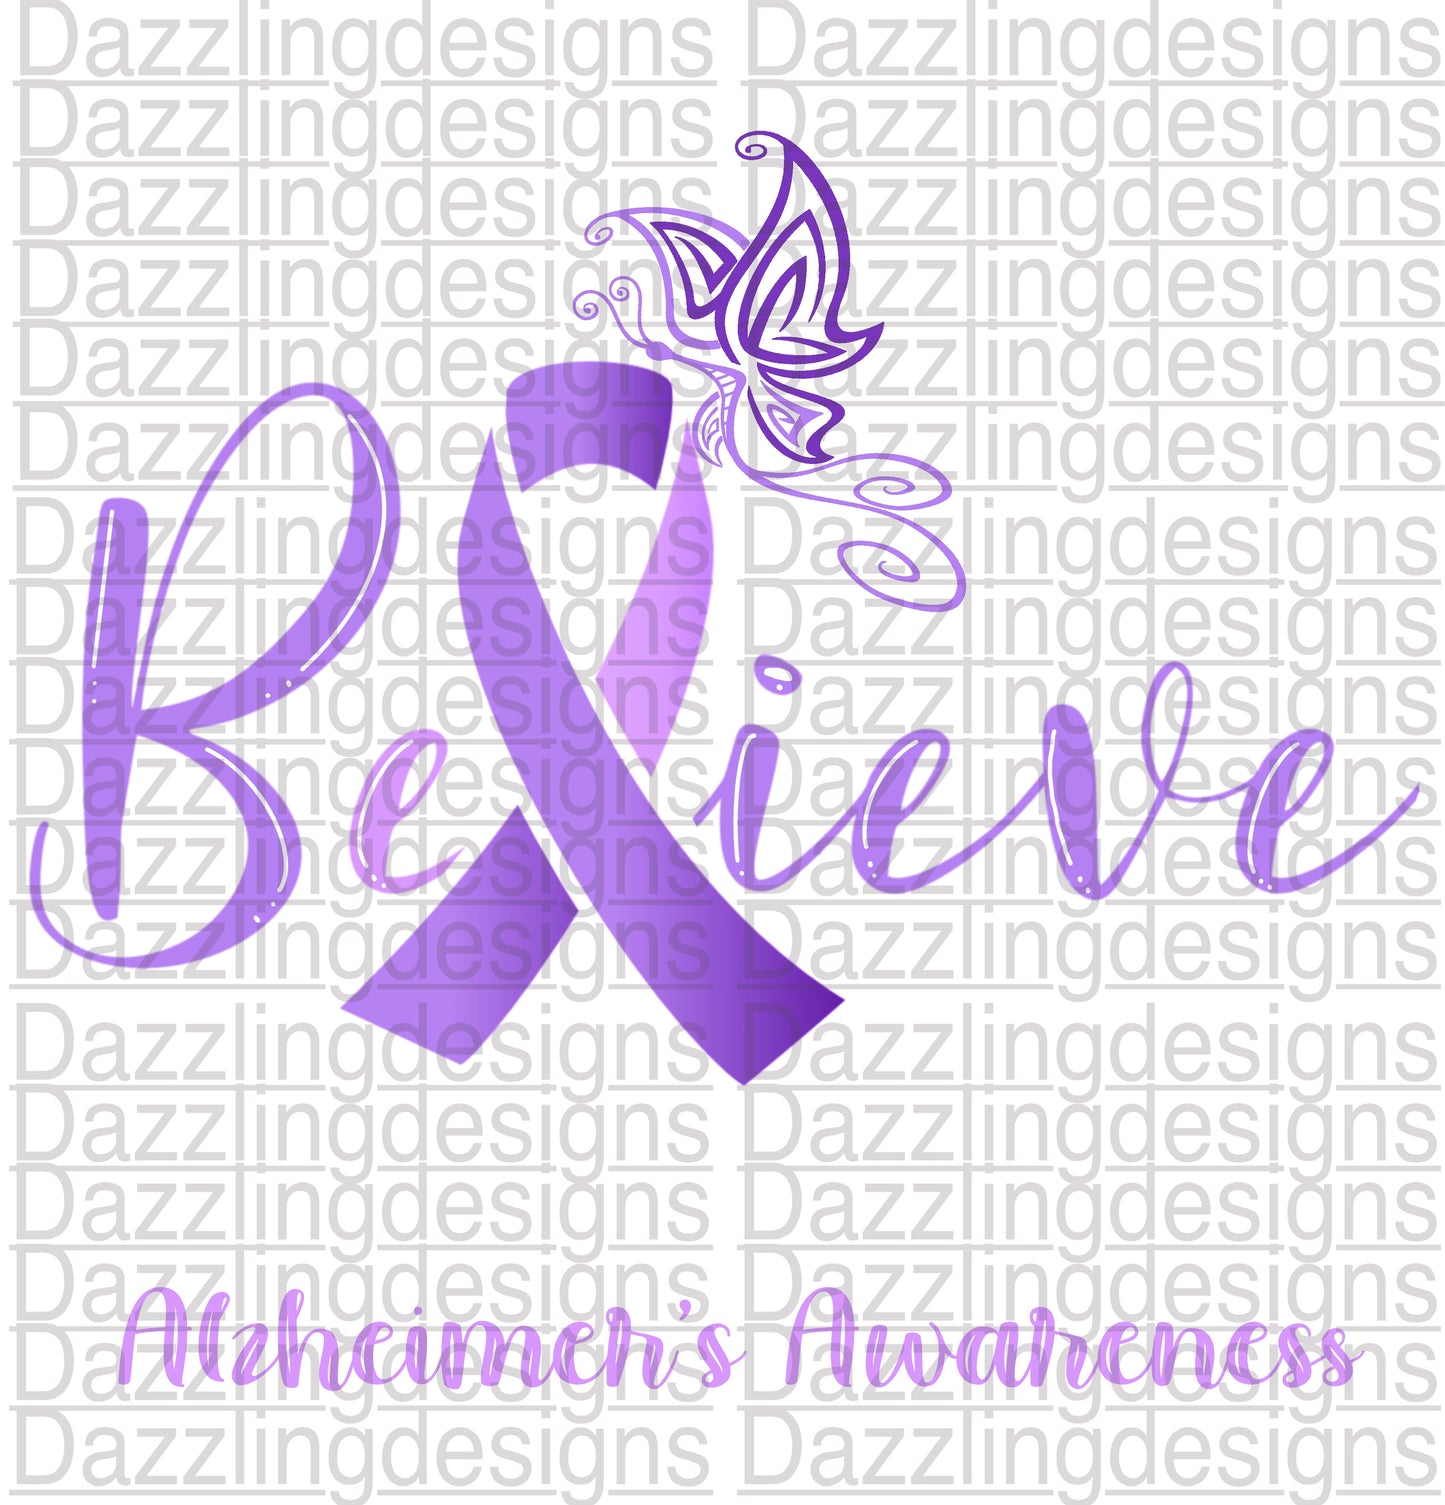 Alzheimer’s Awareness